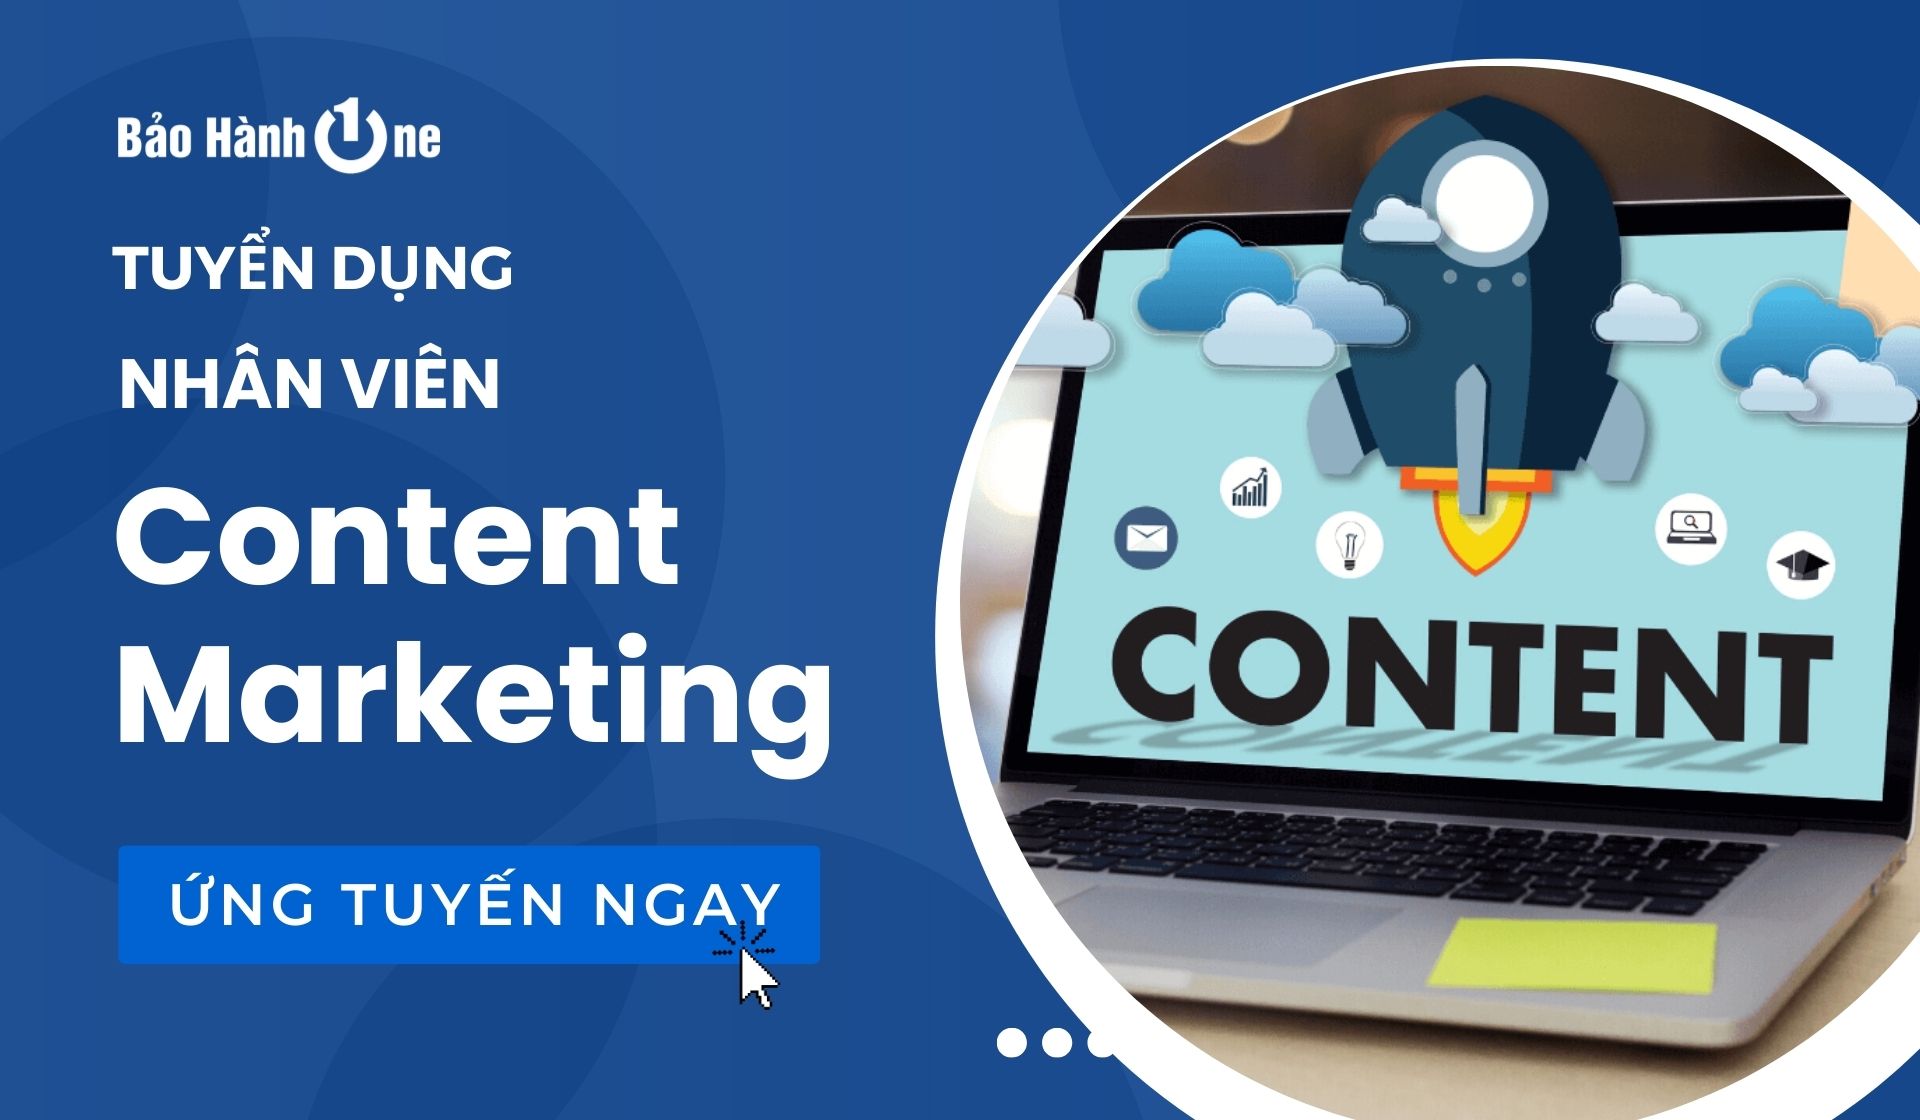 Tuyển dụng Content Marketing lương hấp dẫn tại Hồ Chí Minh